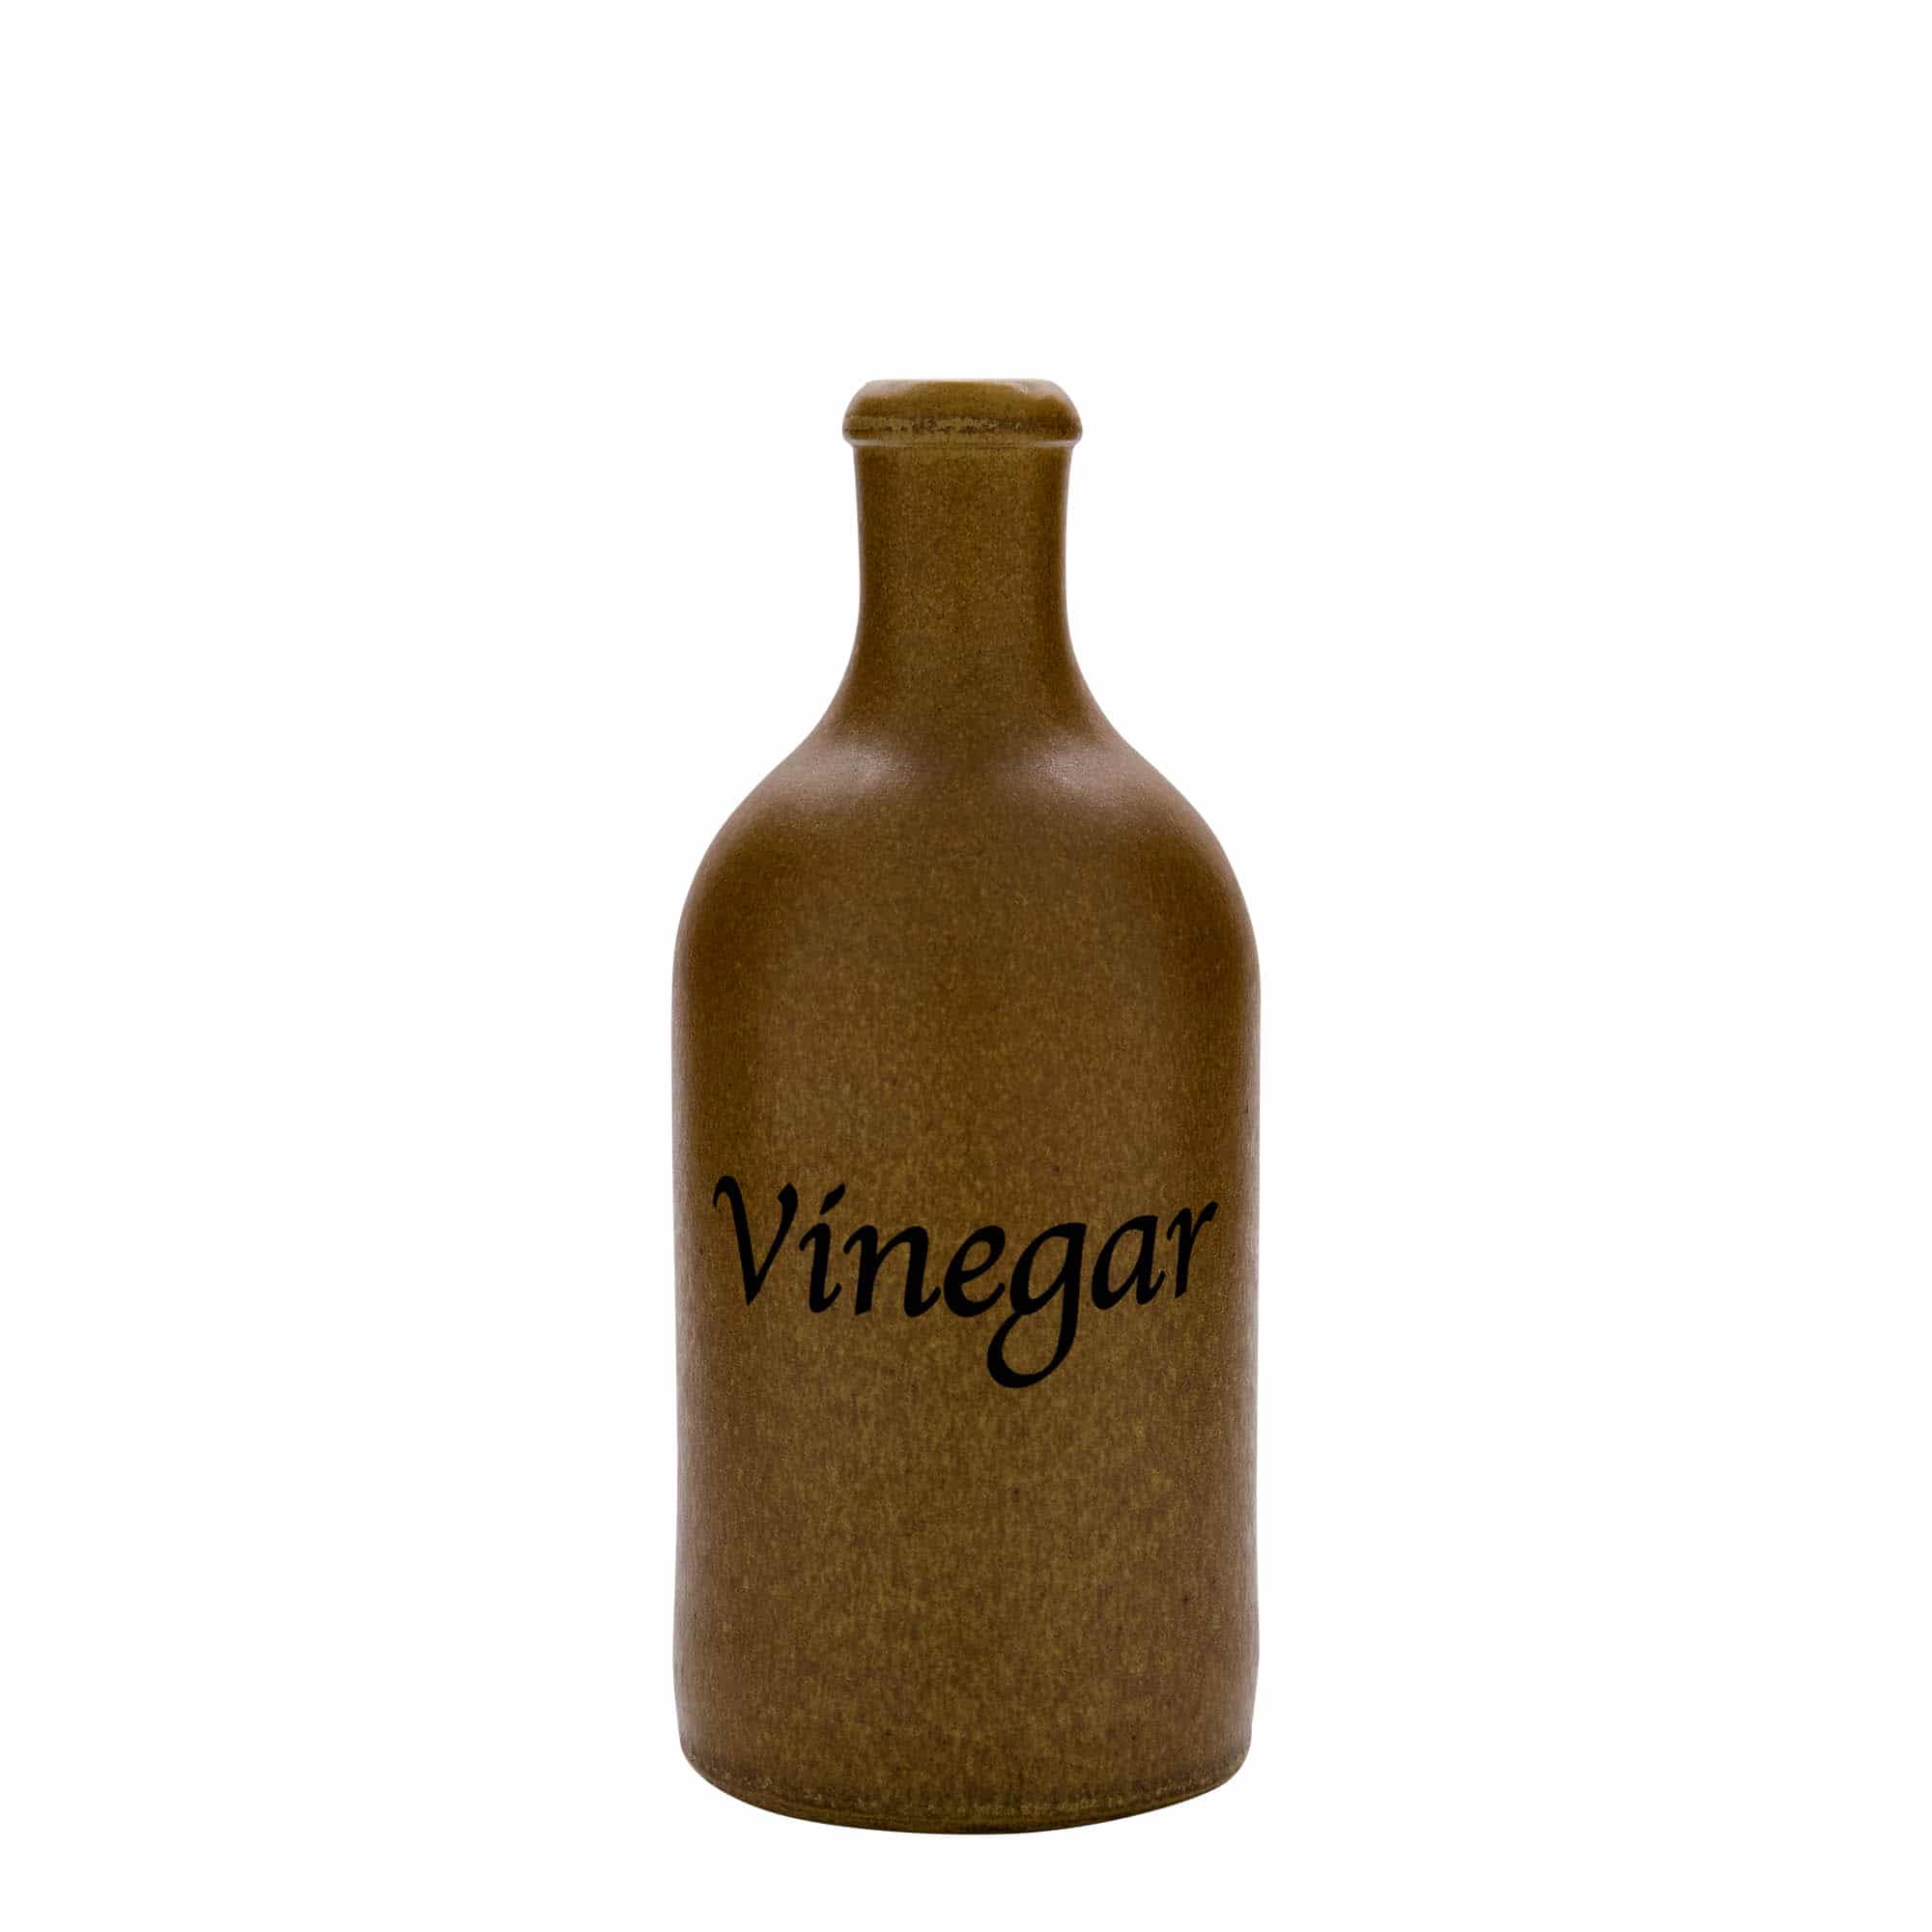 500 ml gliniany dzbanek, wzór: Vinegar, kamionka, kolor brązowo-kryształowy, zamknięcie: korek